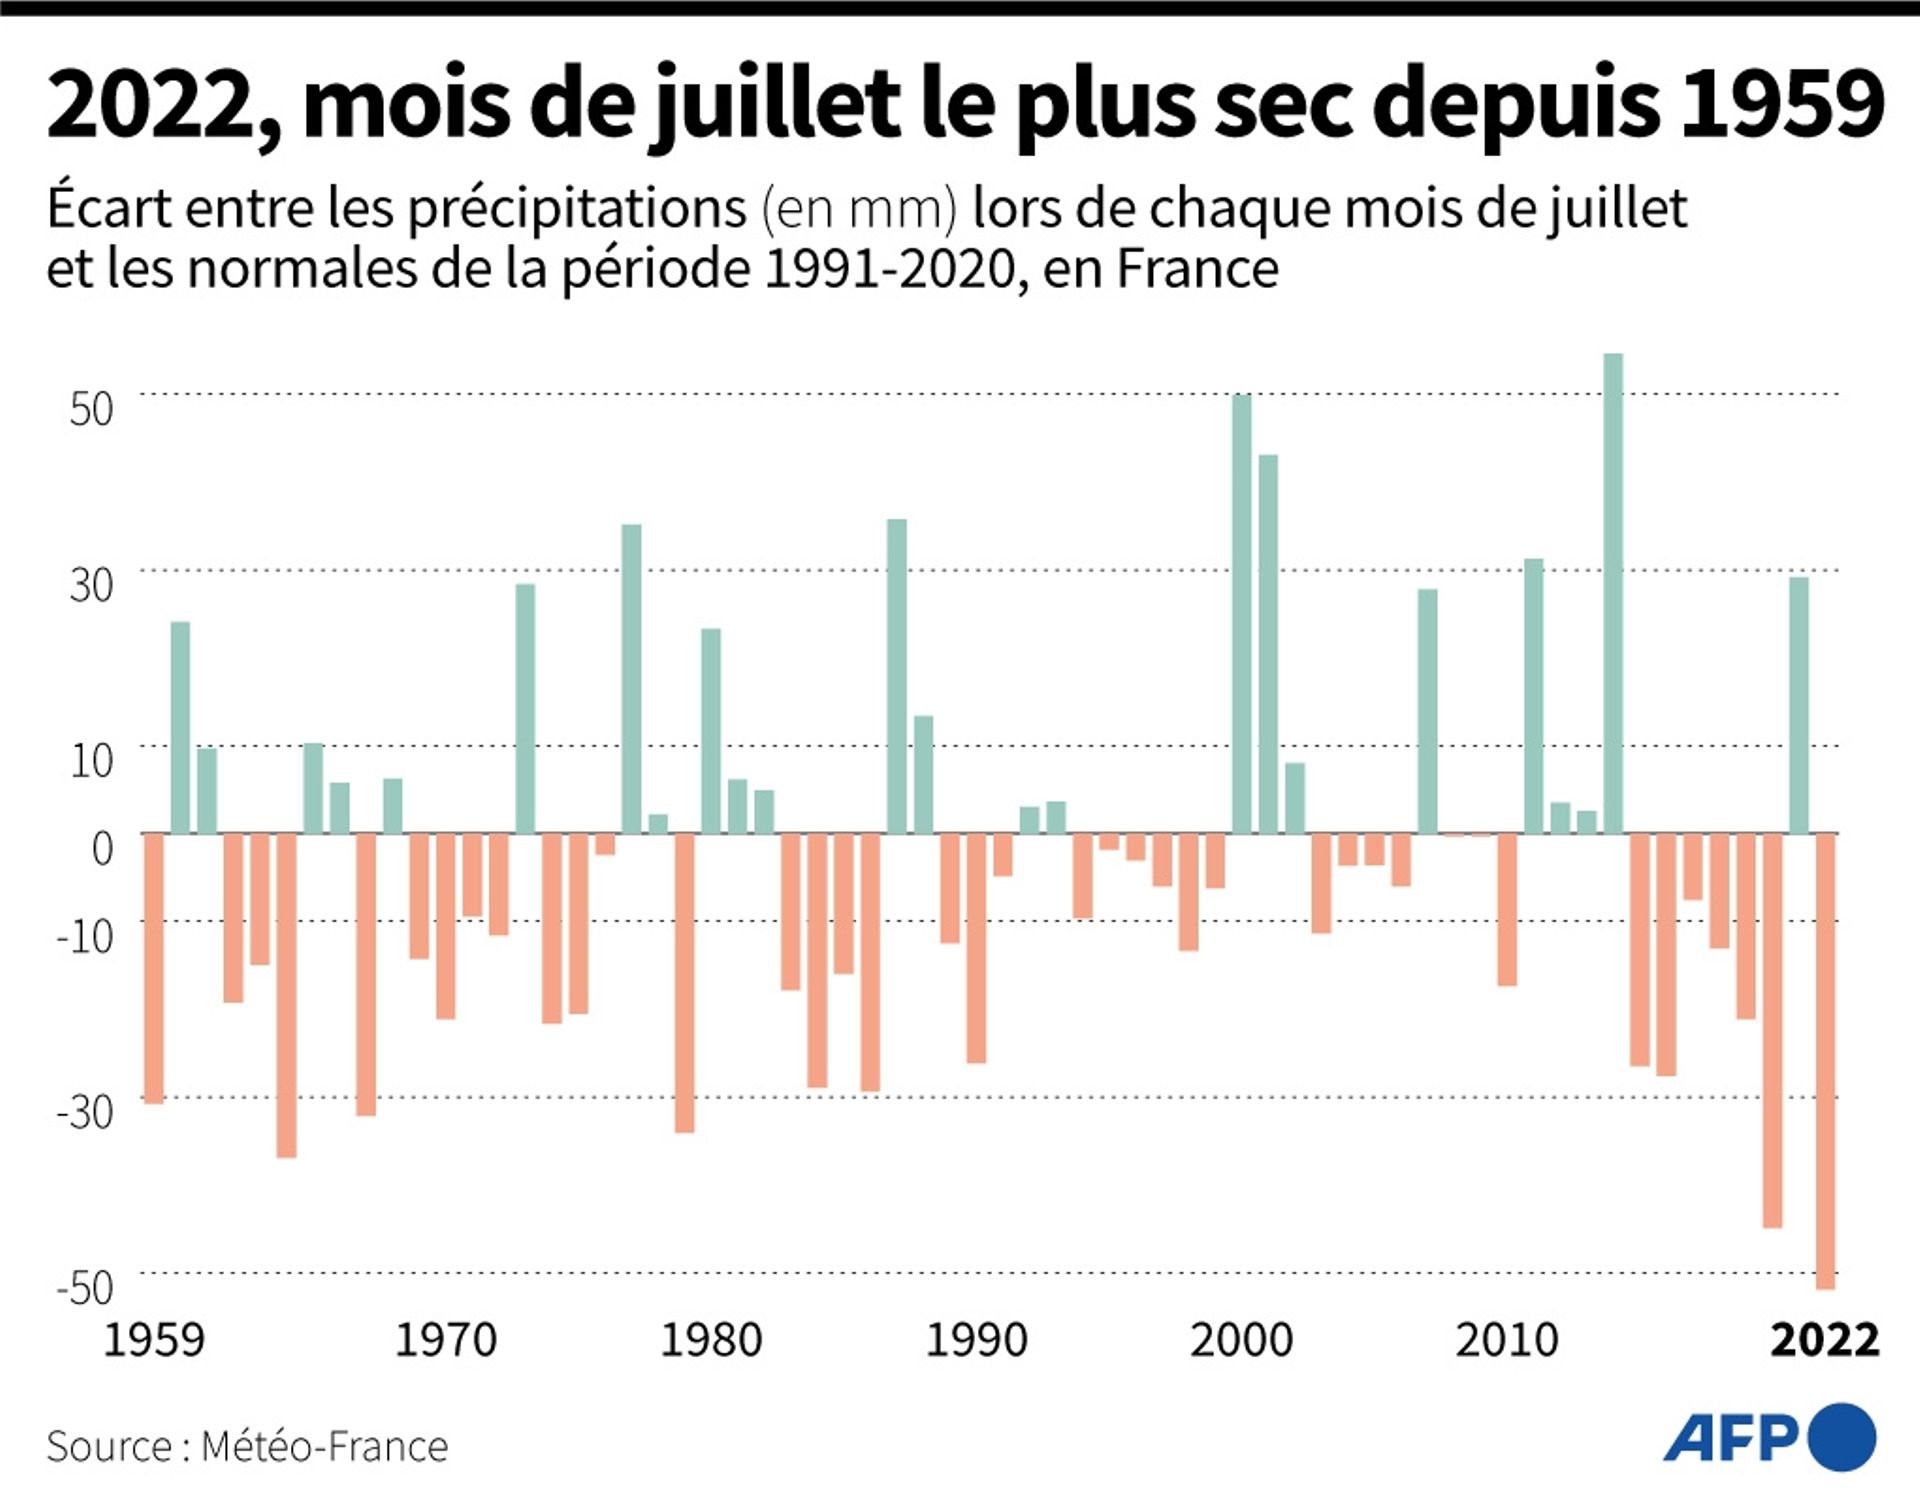 Ecart entre les précipitations enregistrées lors de chaque mois de juillet depuis 1959 et les normales saisonnières de la période 1991-2020, selon les données de Météo-France